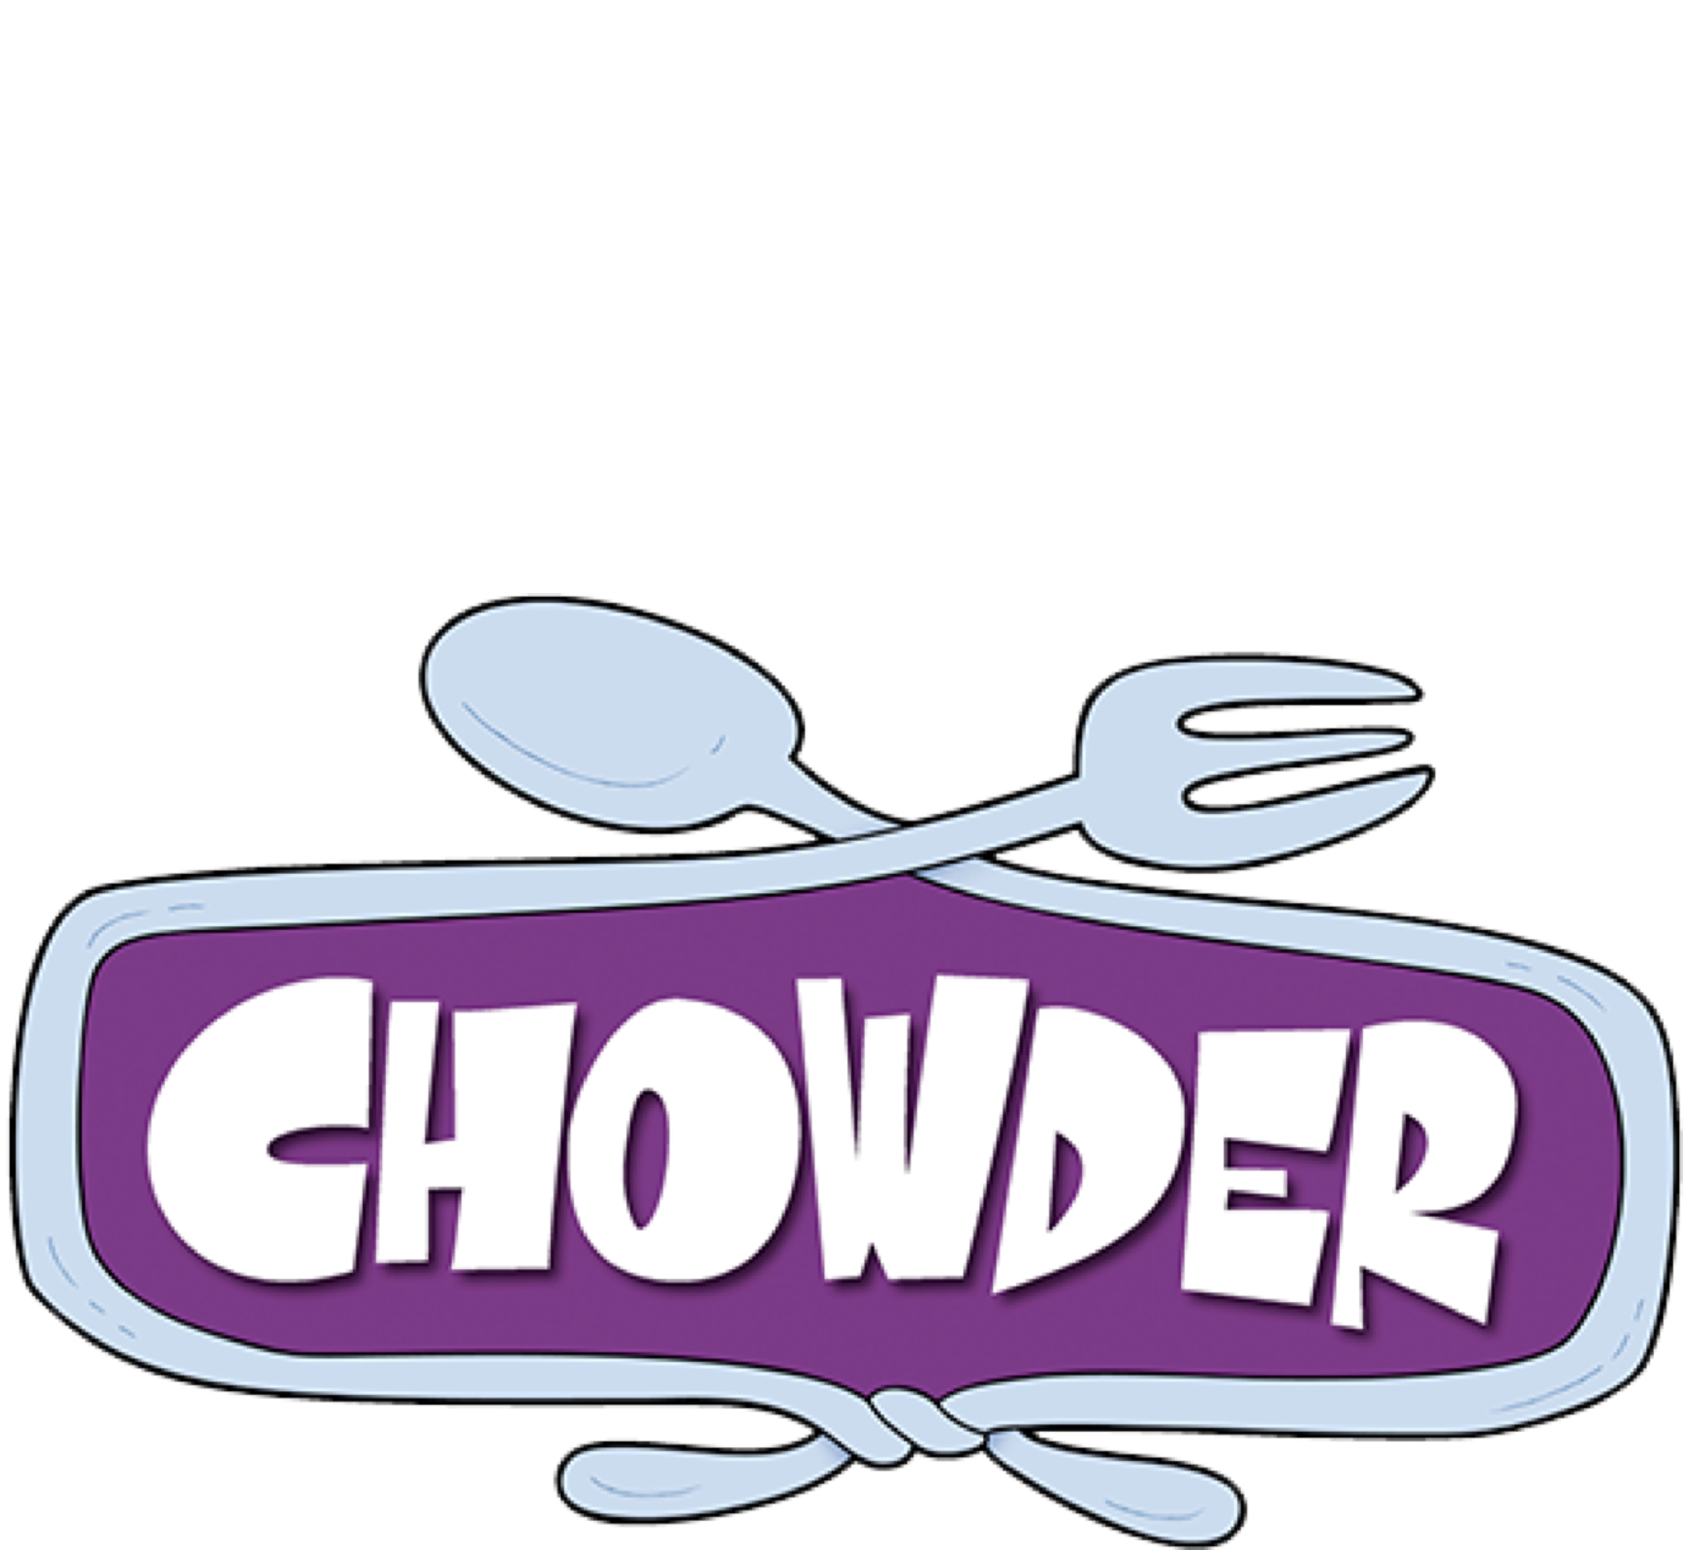 Chowder: Bookin' Cook